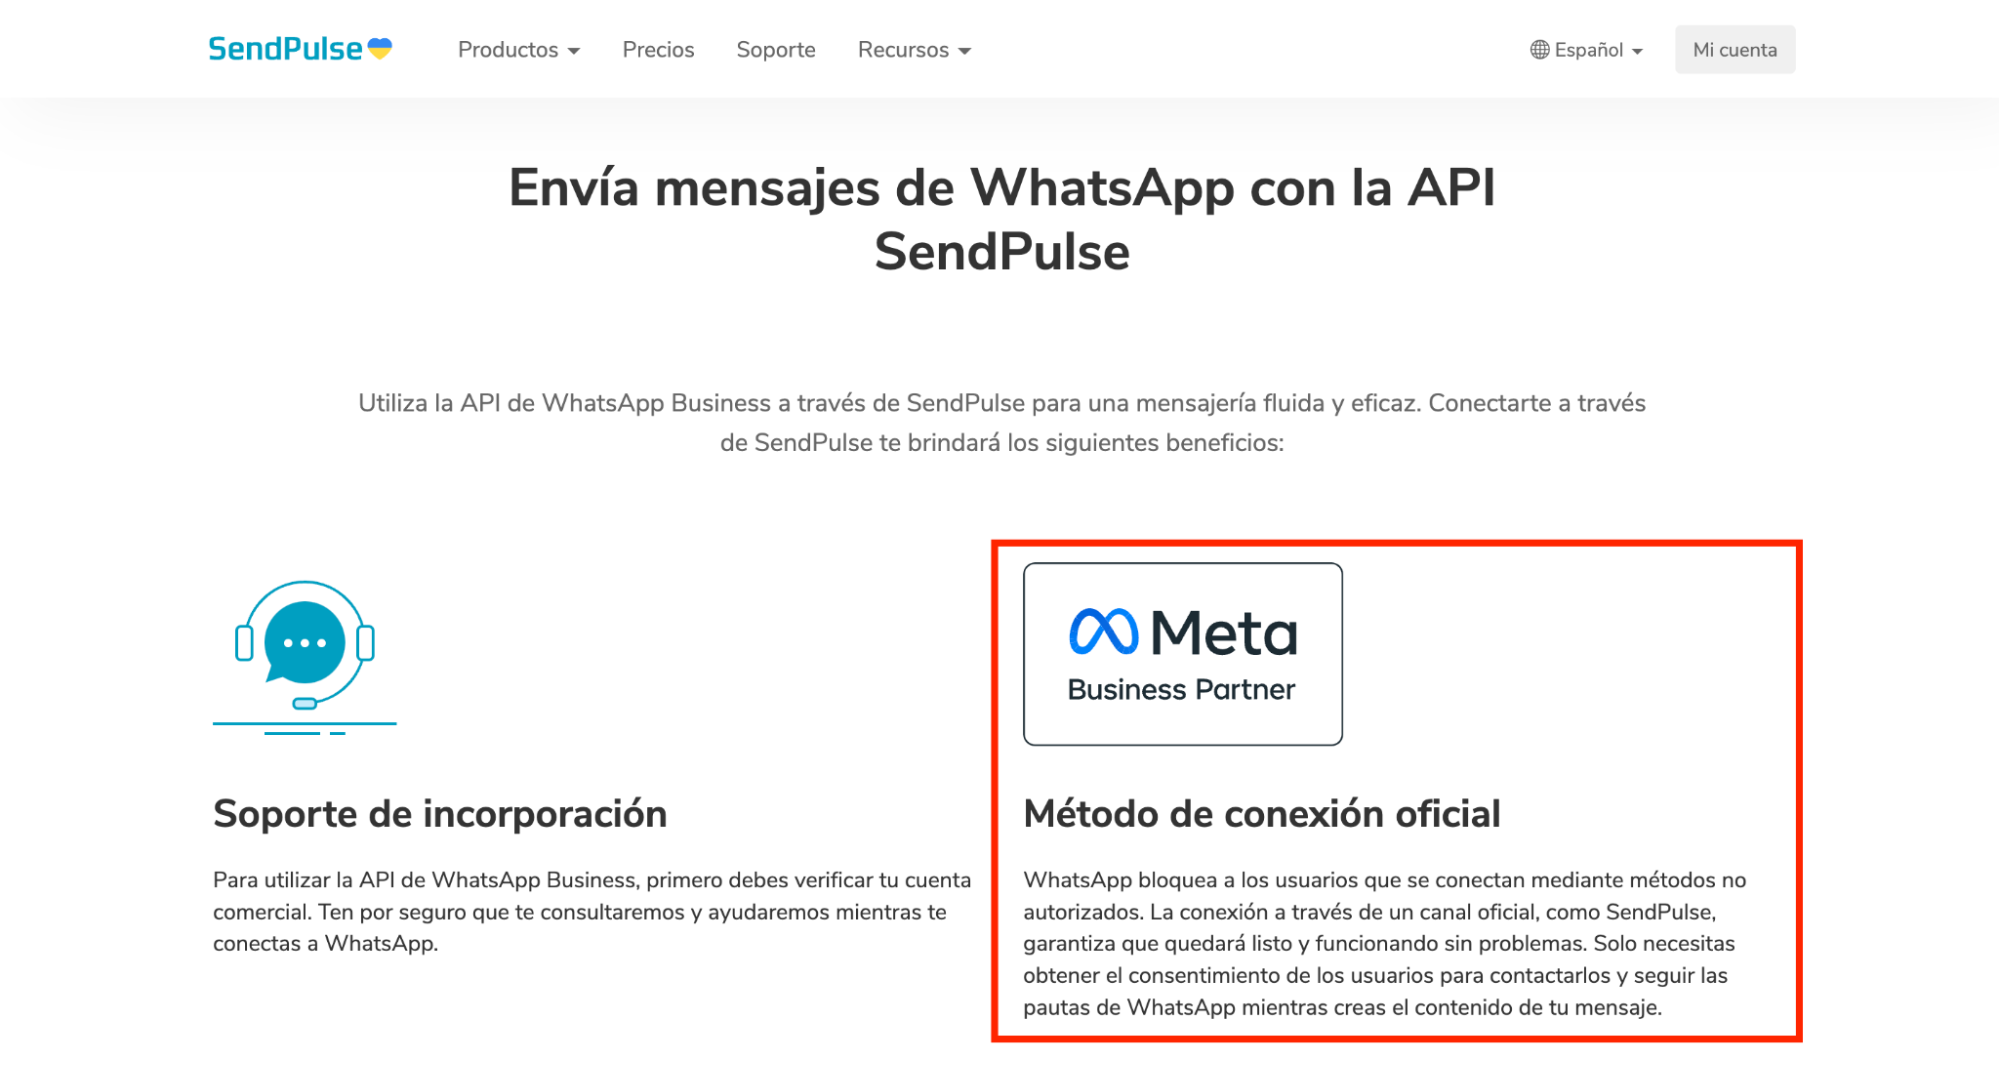 SendPulse te ofrece una API de WhatsApp oficial a través de su certificado de Meta